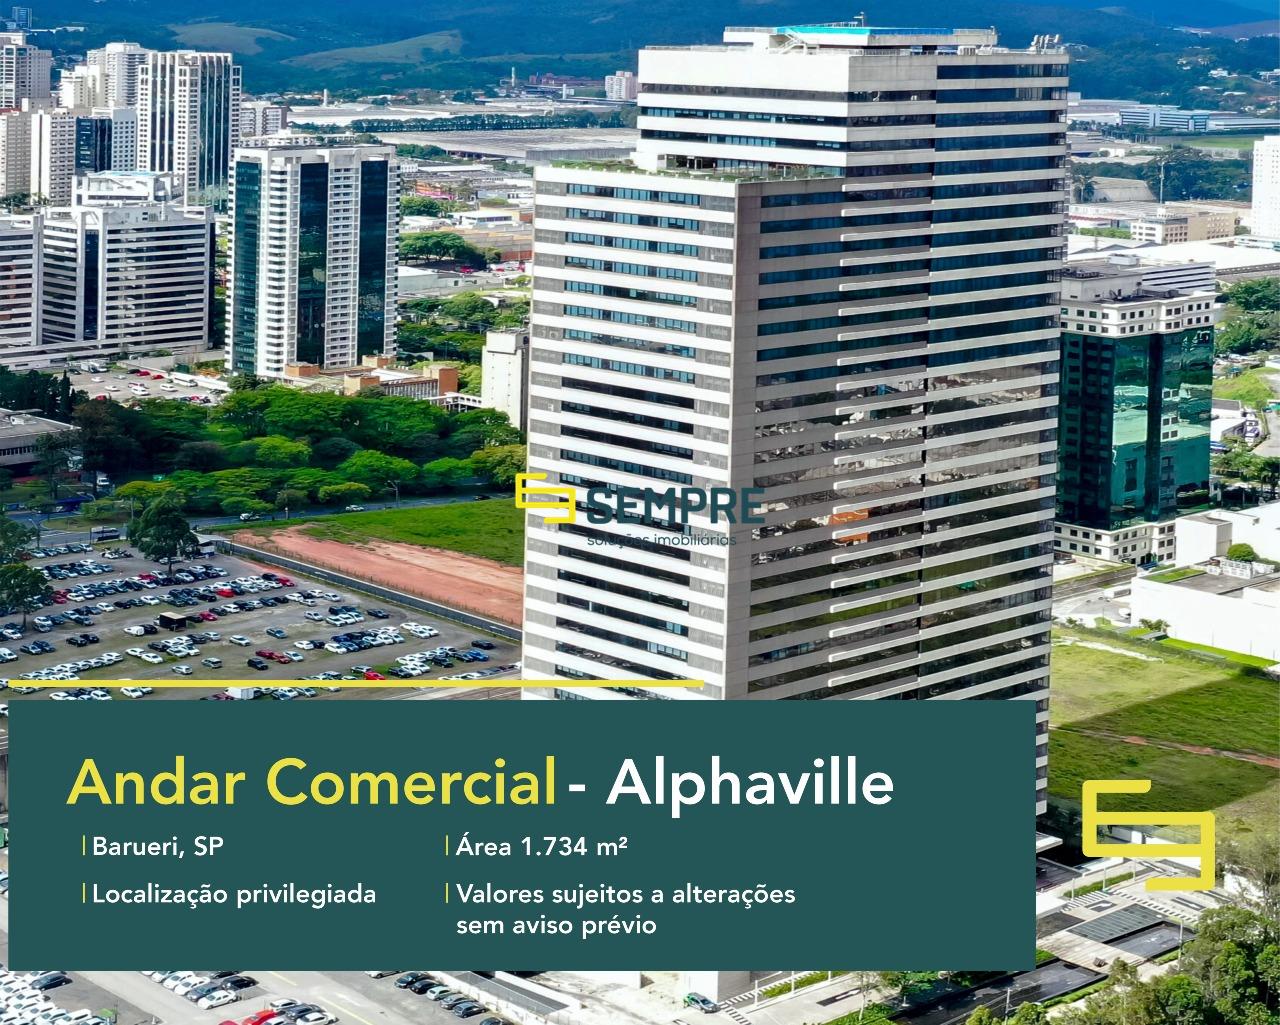 Laje corporativa para locação no Alphaville em São Paulo, excelente localização. O estabelecimento comercial conta com área de 1.734,34 m².